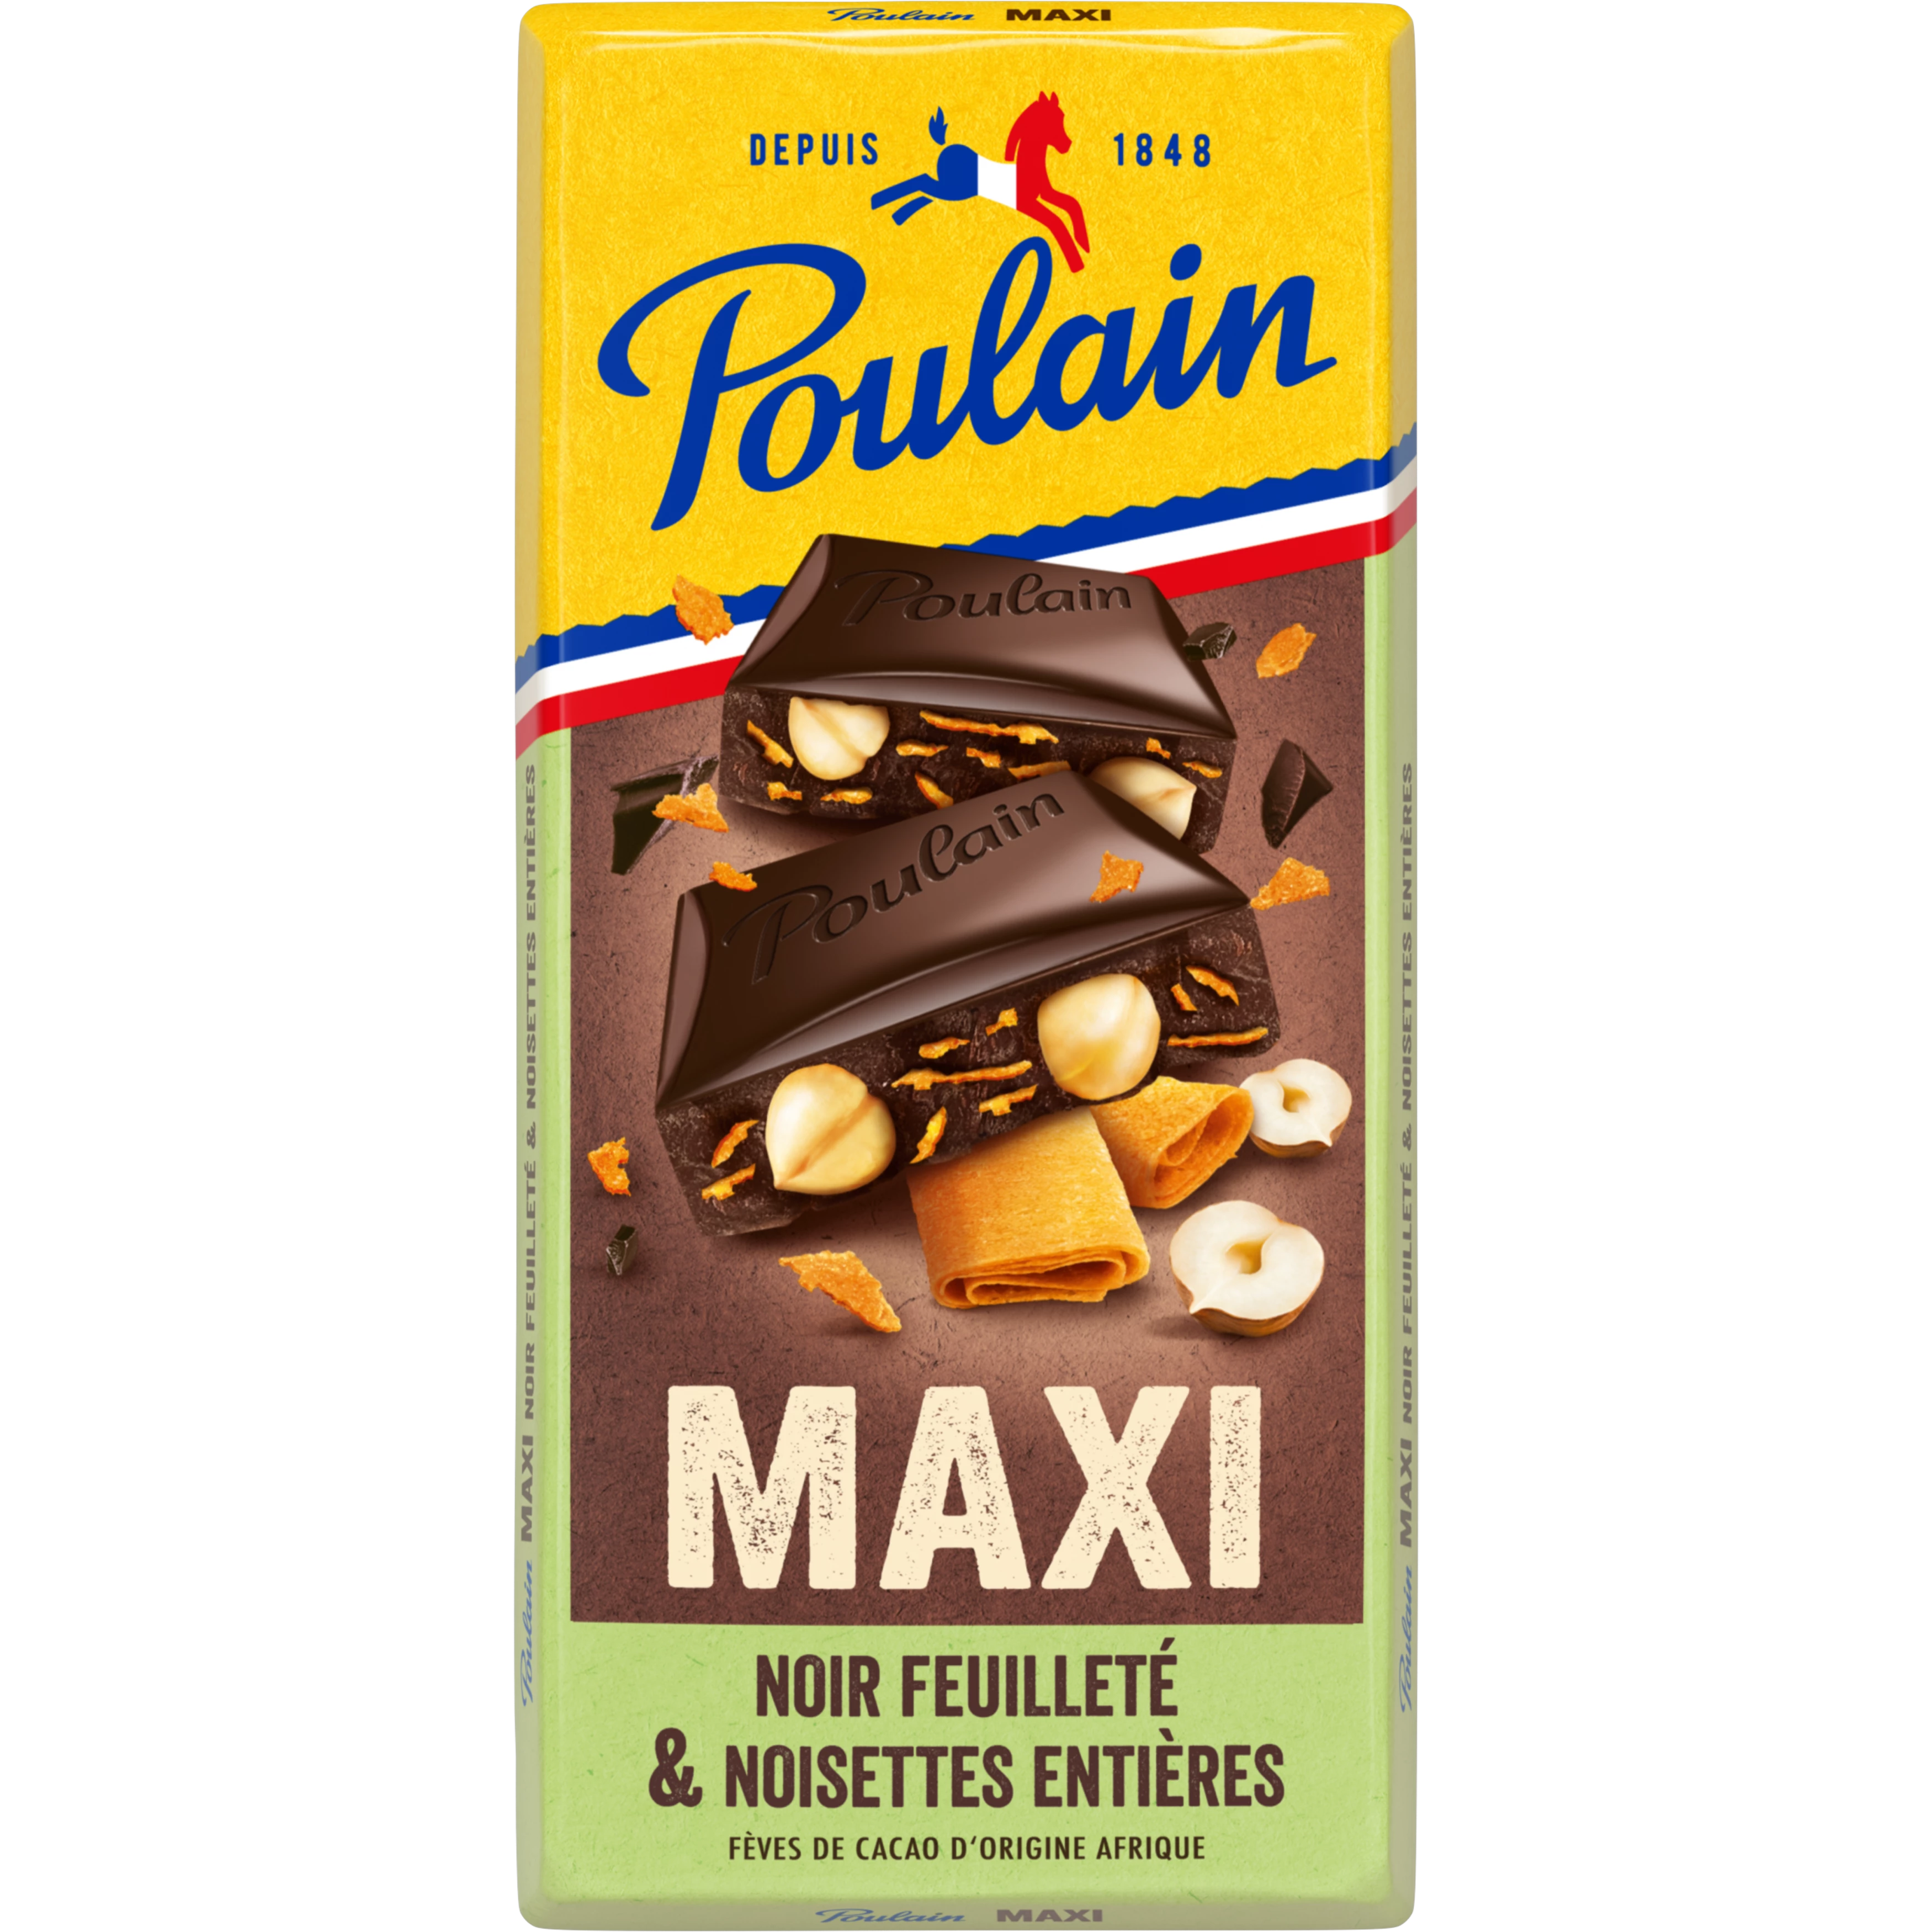 Poulain Maxi Nr Nois Feuill 19